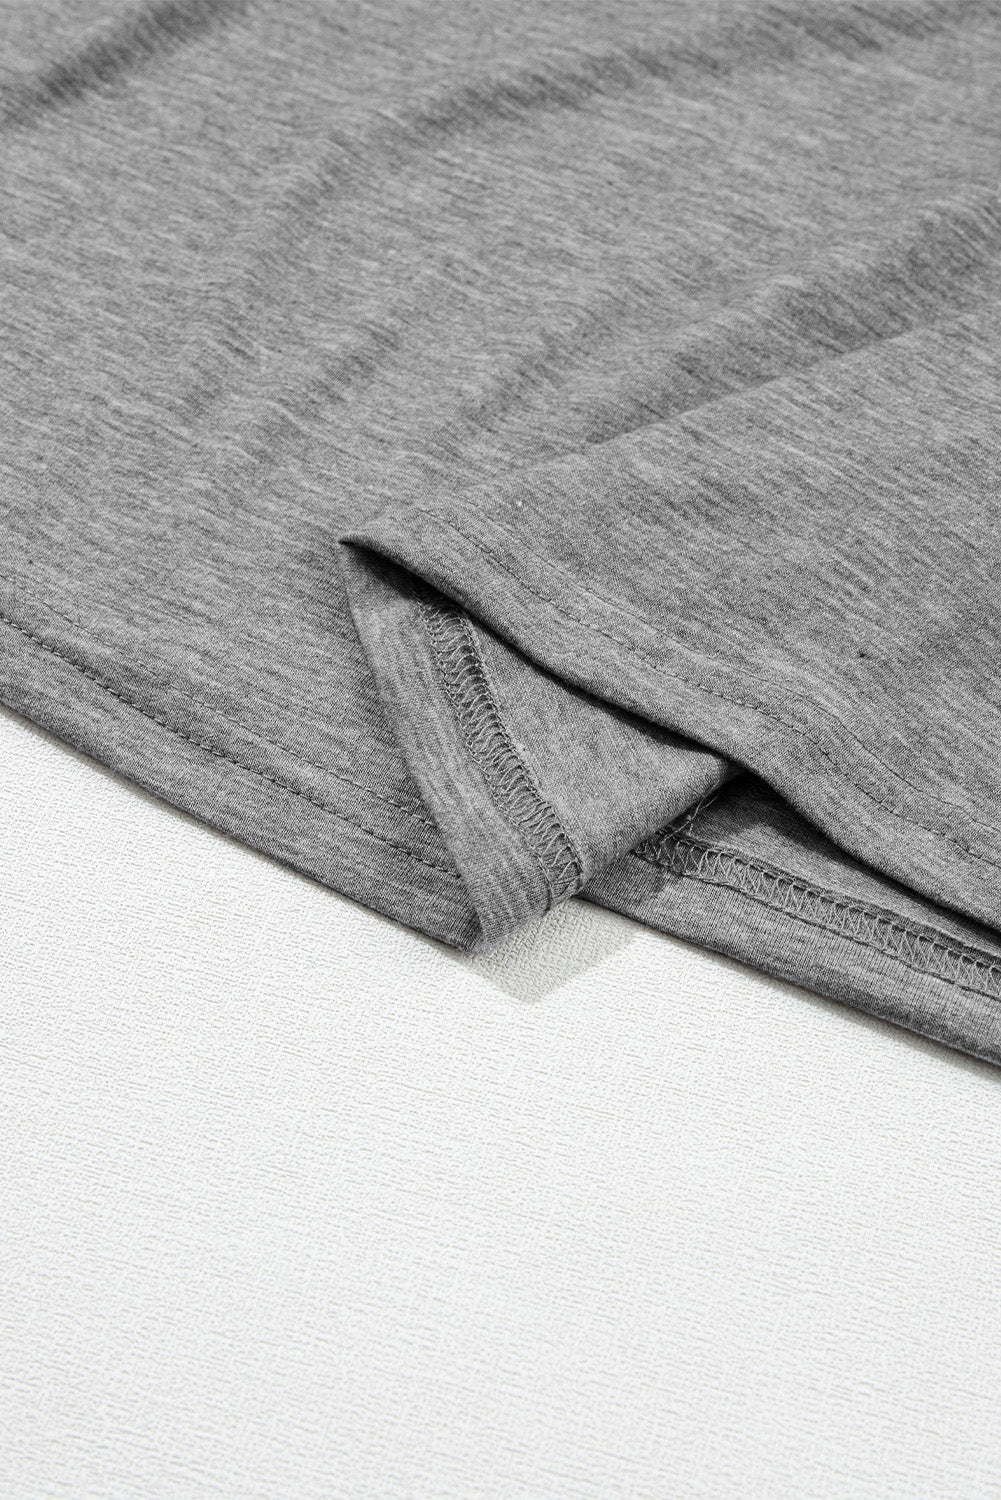 Haut en tricot plissé gris à manches raglan et dentelle contrastée